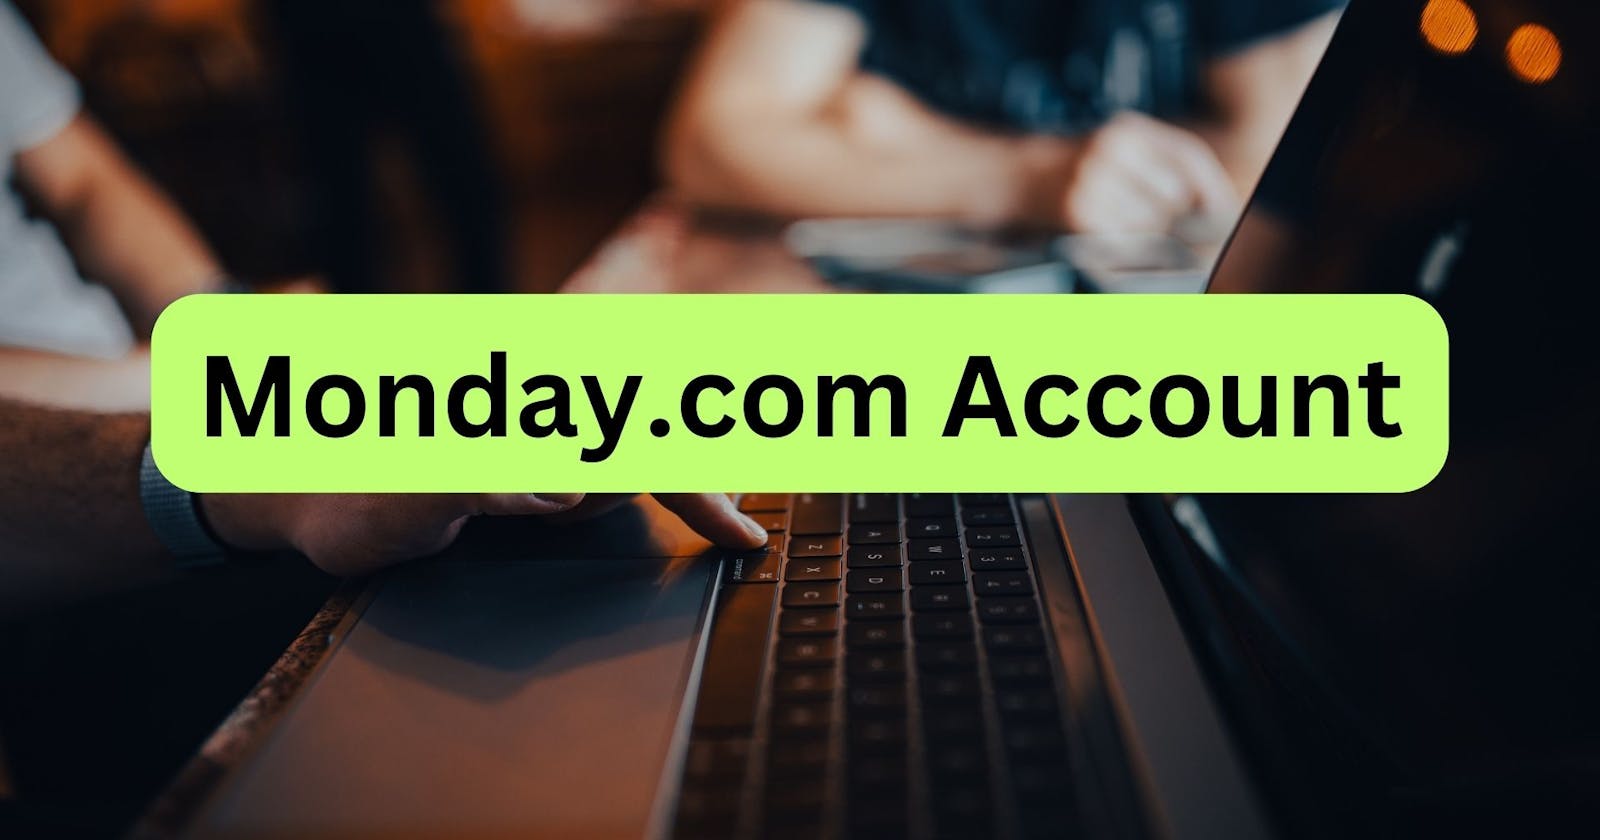 Log into a Monday. com Account